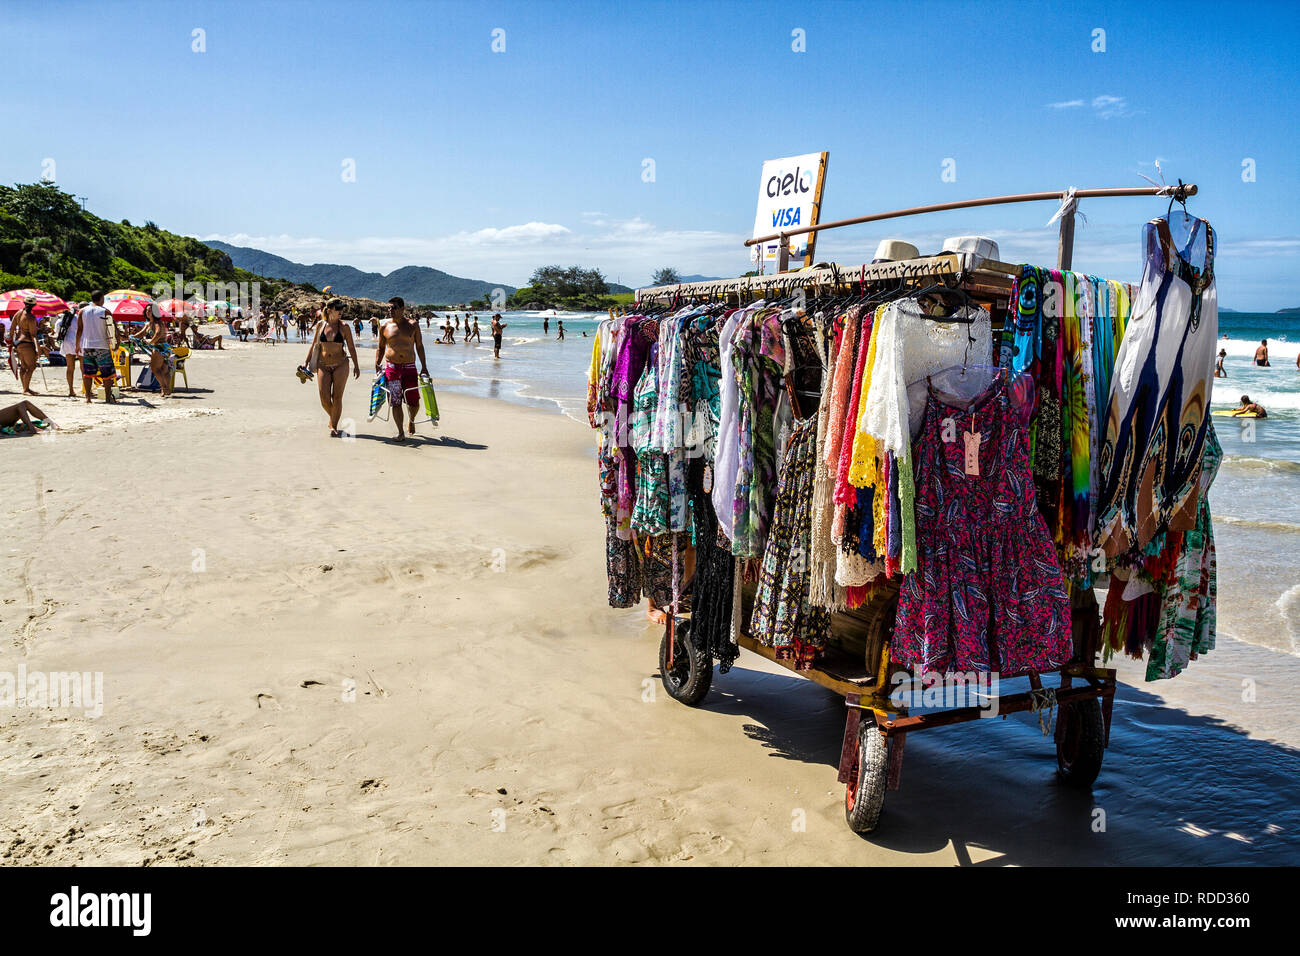 Foto de puesto de ropa, ropa, venta ambulante, playa, verano do